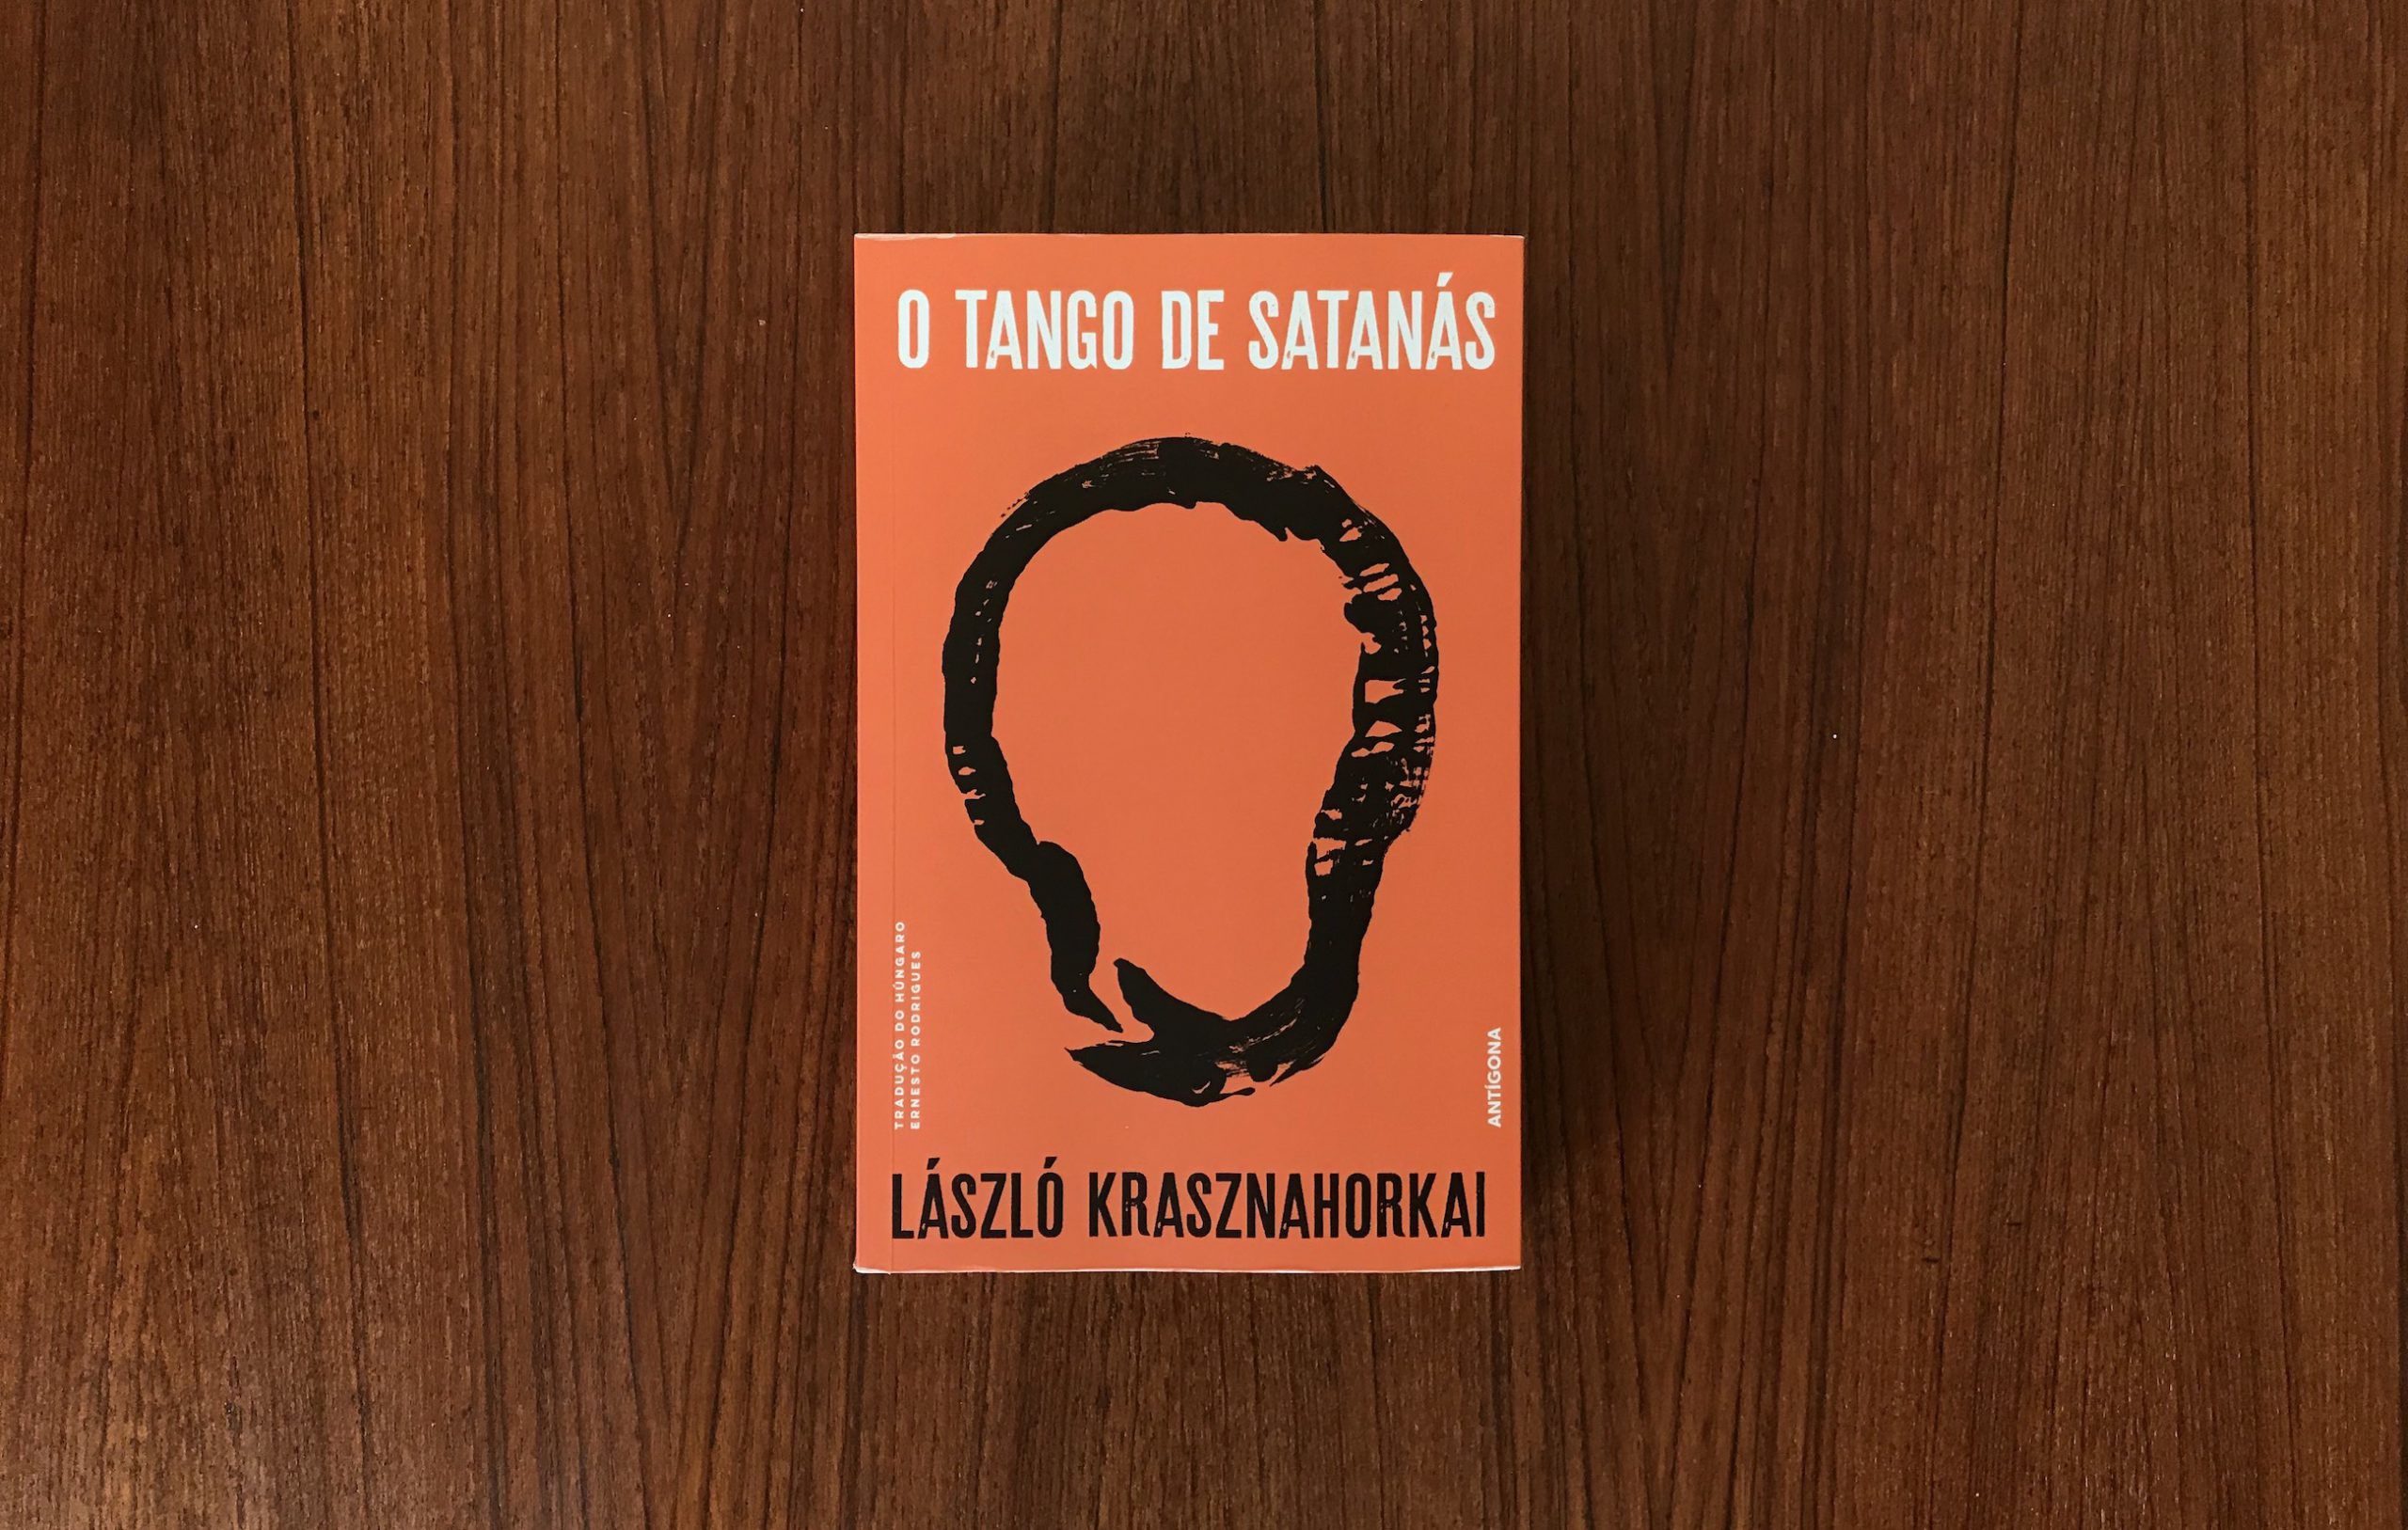 László Krasznahorkai traz-nos a imutabilidade do mundo em “O Tango de Satanás”